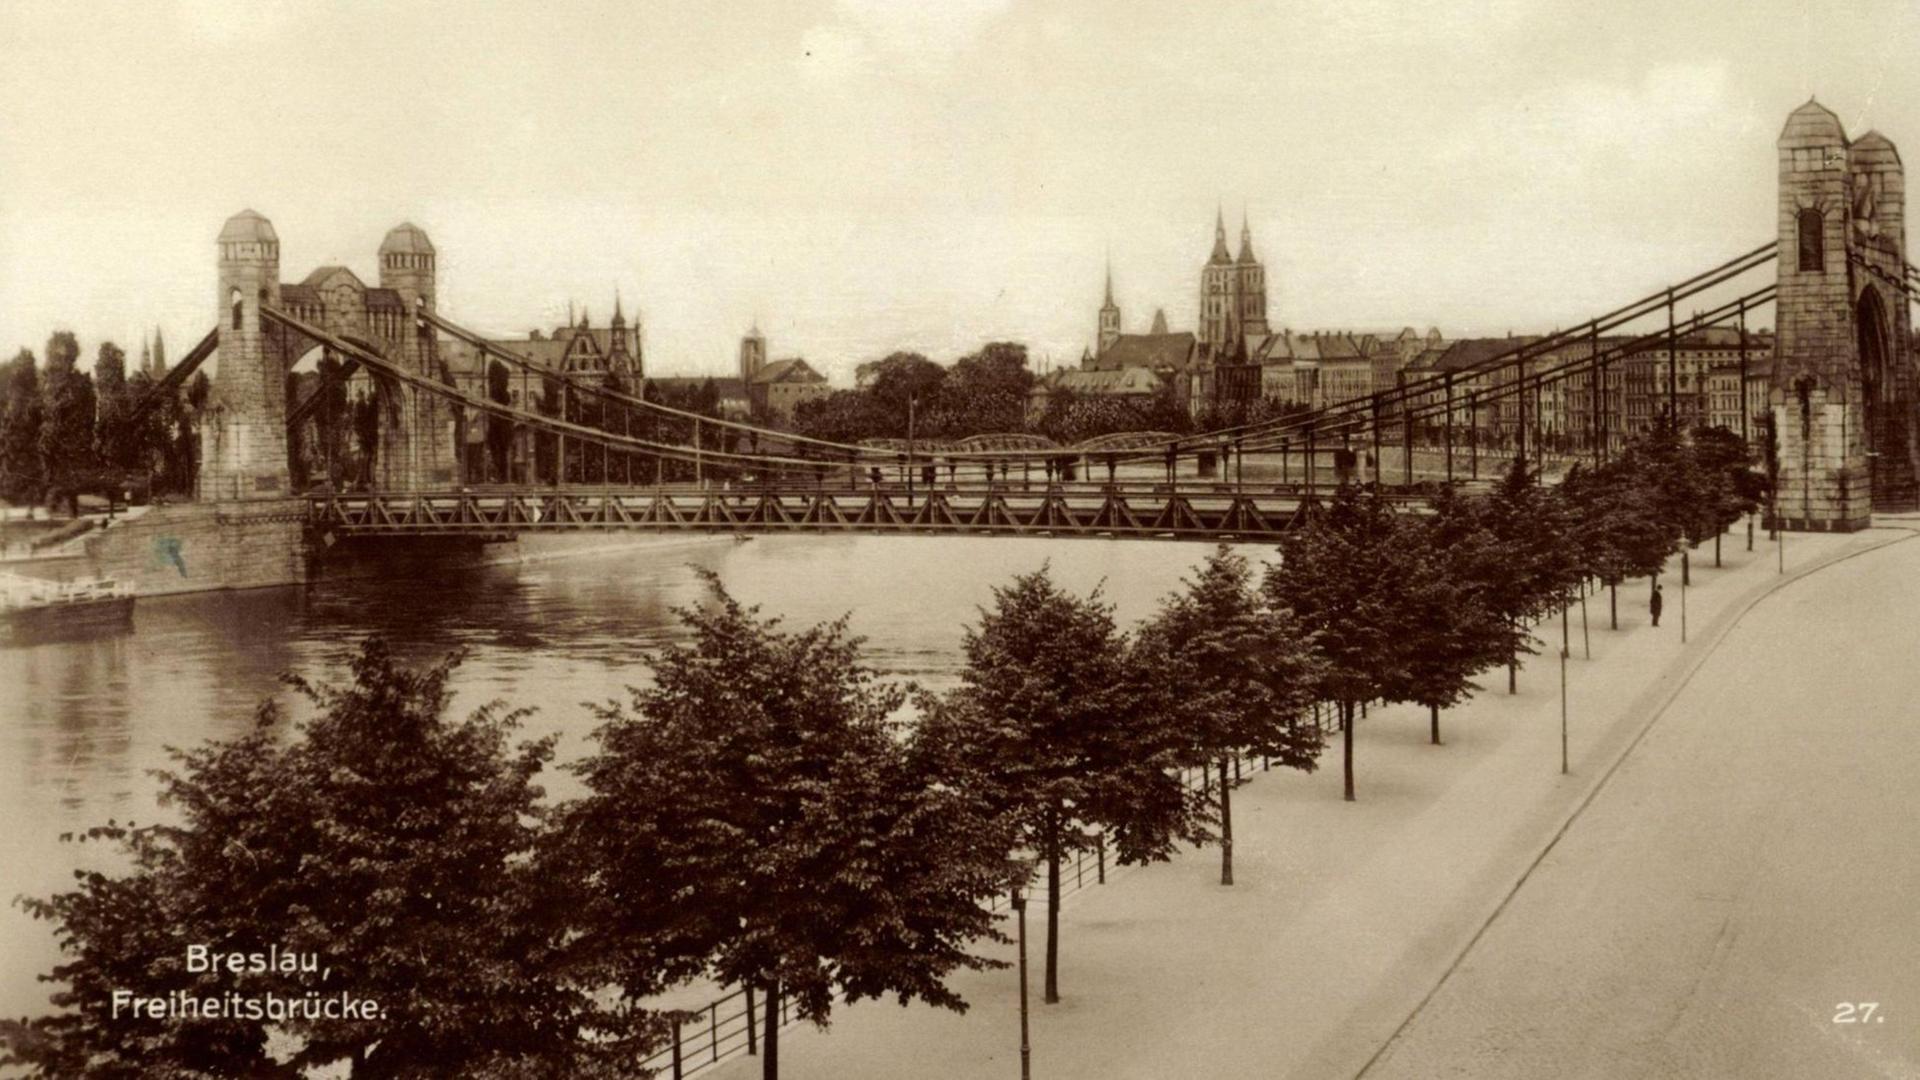 Blick auf die Freiheitsbrücke in Breslau, ca. 1930